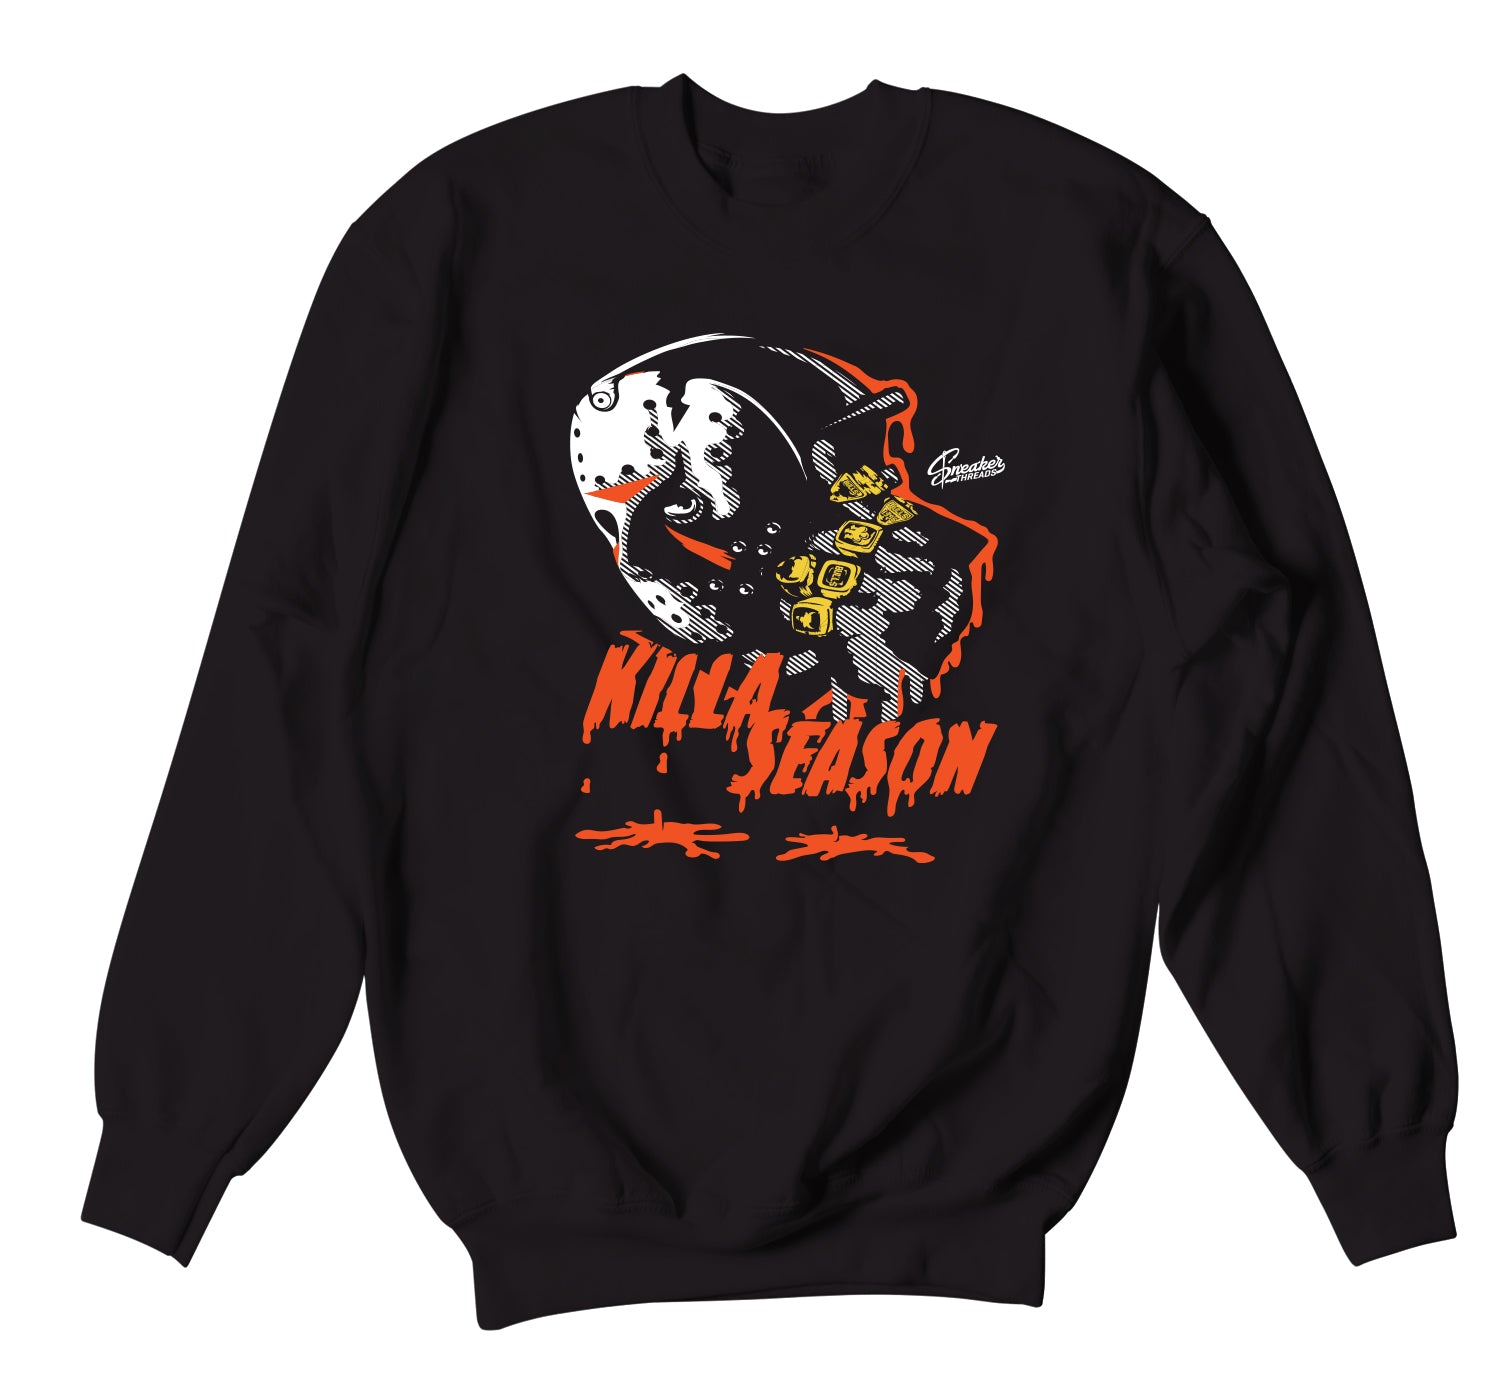 Retro Starfish Sweater - Killa Season - Black